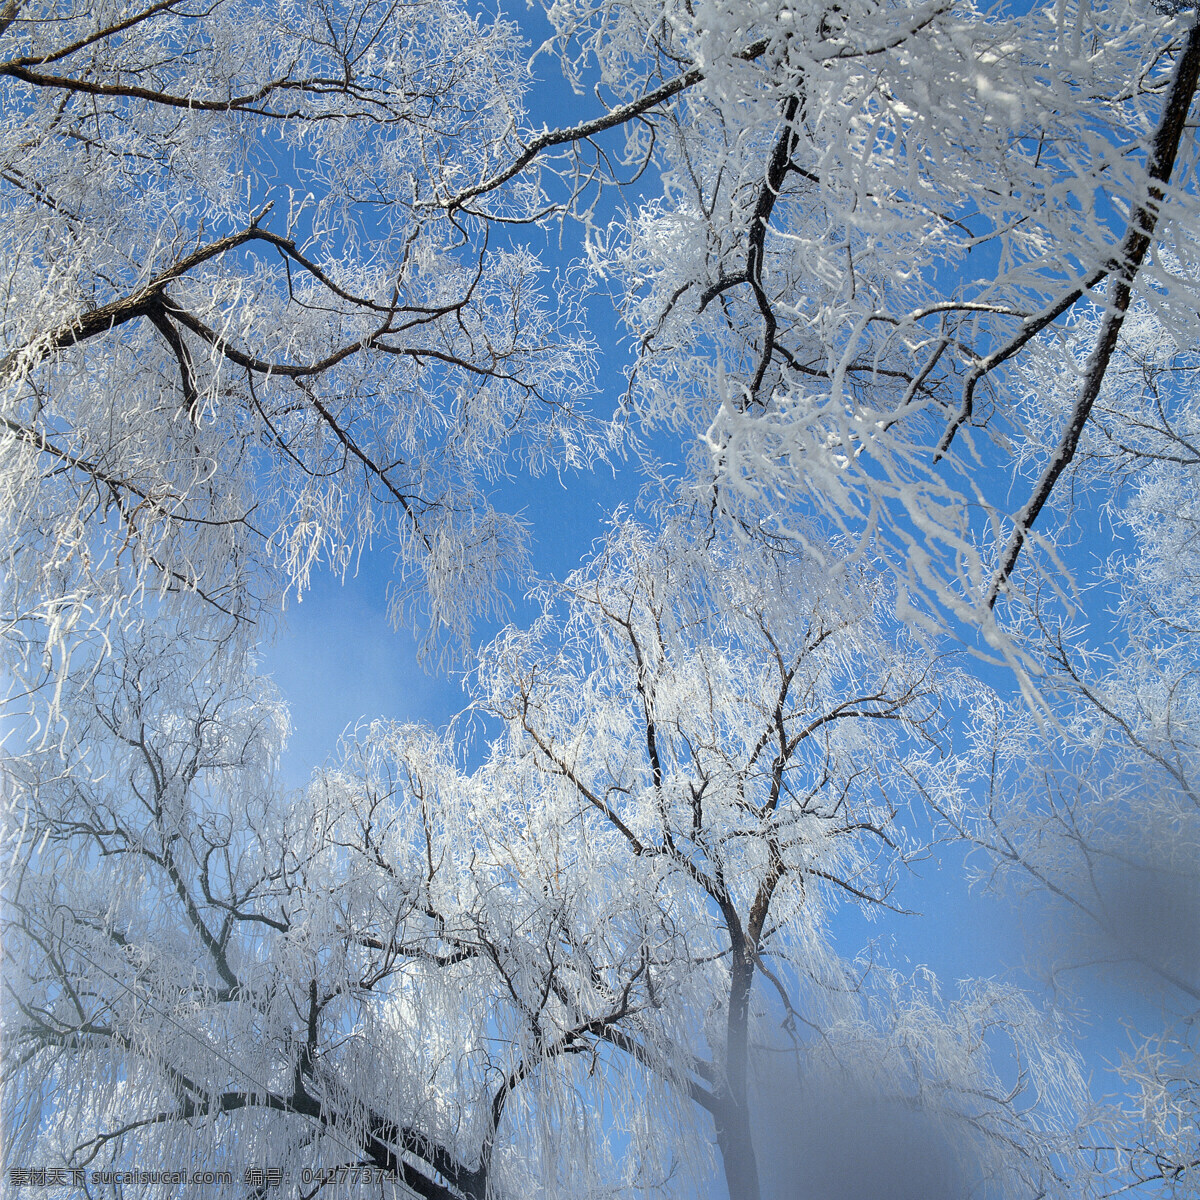 树木 上 冰花 大自然 自然风景 美丽风景 美景 景色 风景摄影 旅游景区 旅游风景 旅游奇观 雪山 雪景 冬天风景 结冰的树木 自然景观 蓝色